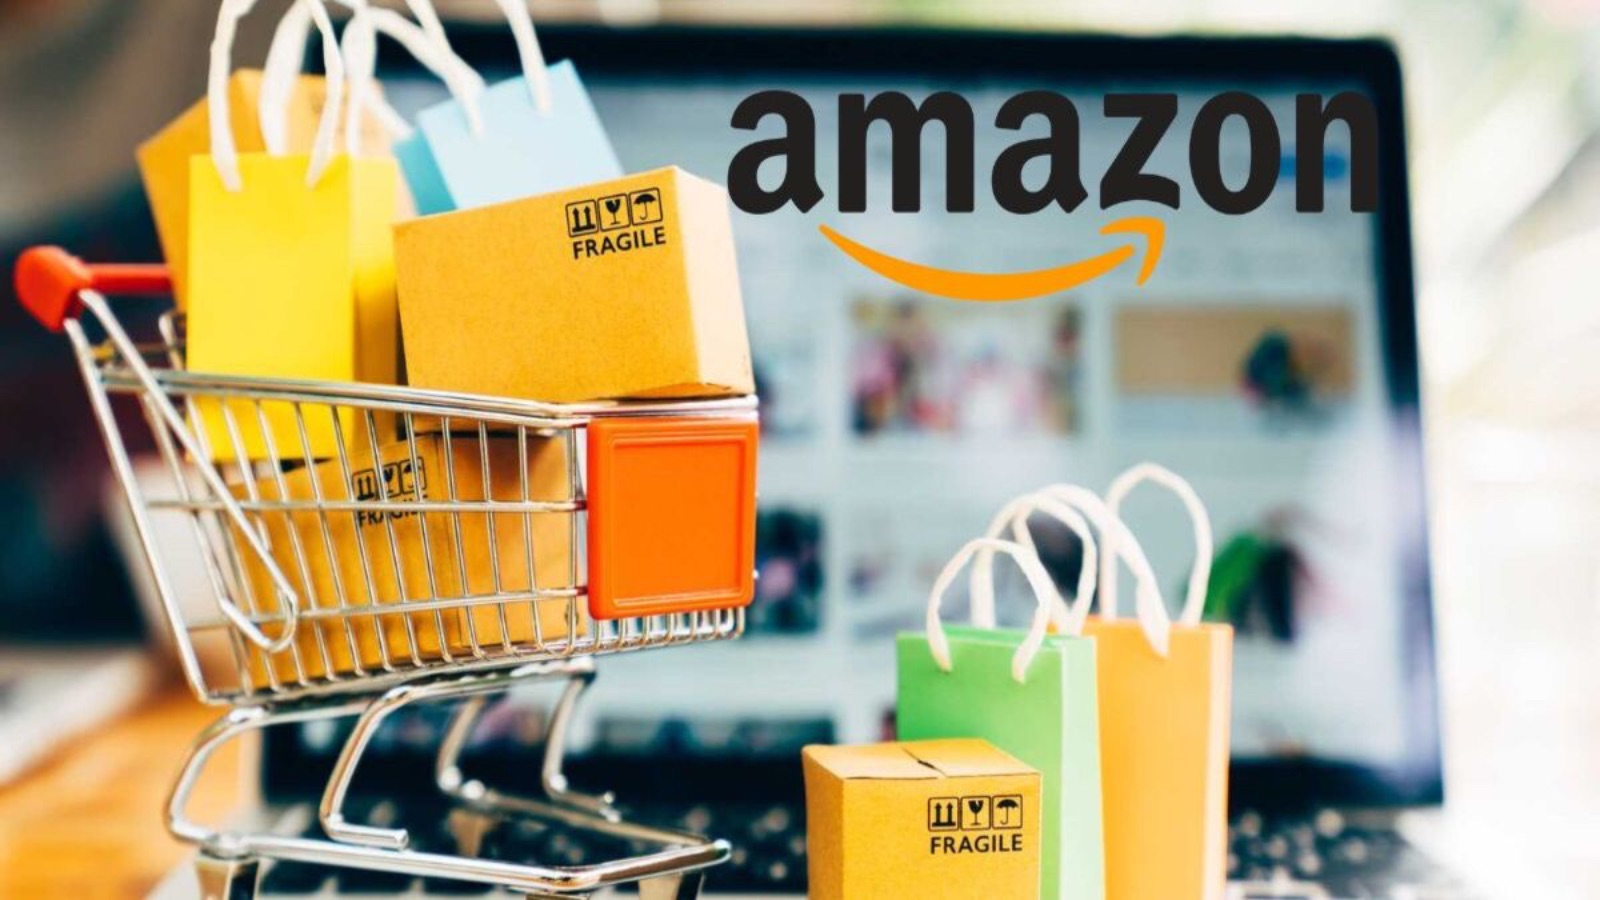 Amazon inizia i Prime Day in ANTICIPO, offerte al 60% di sconto oggi